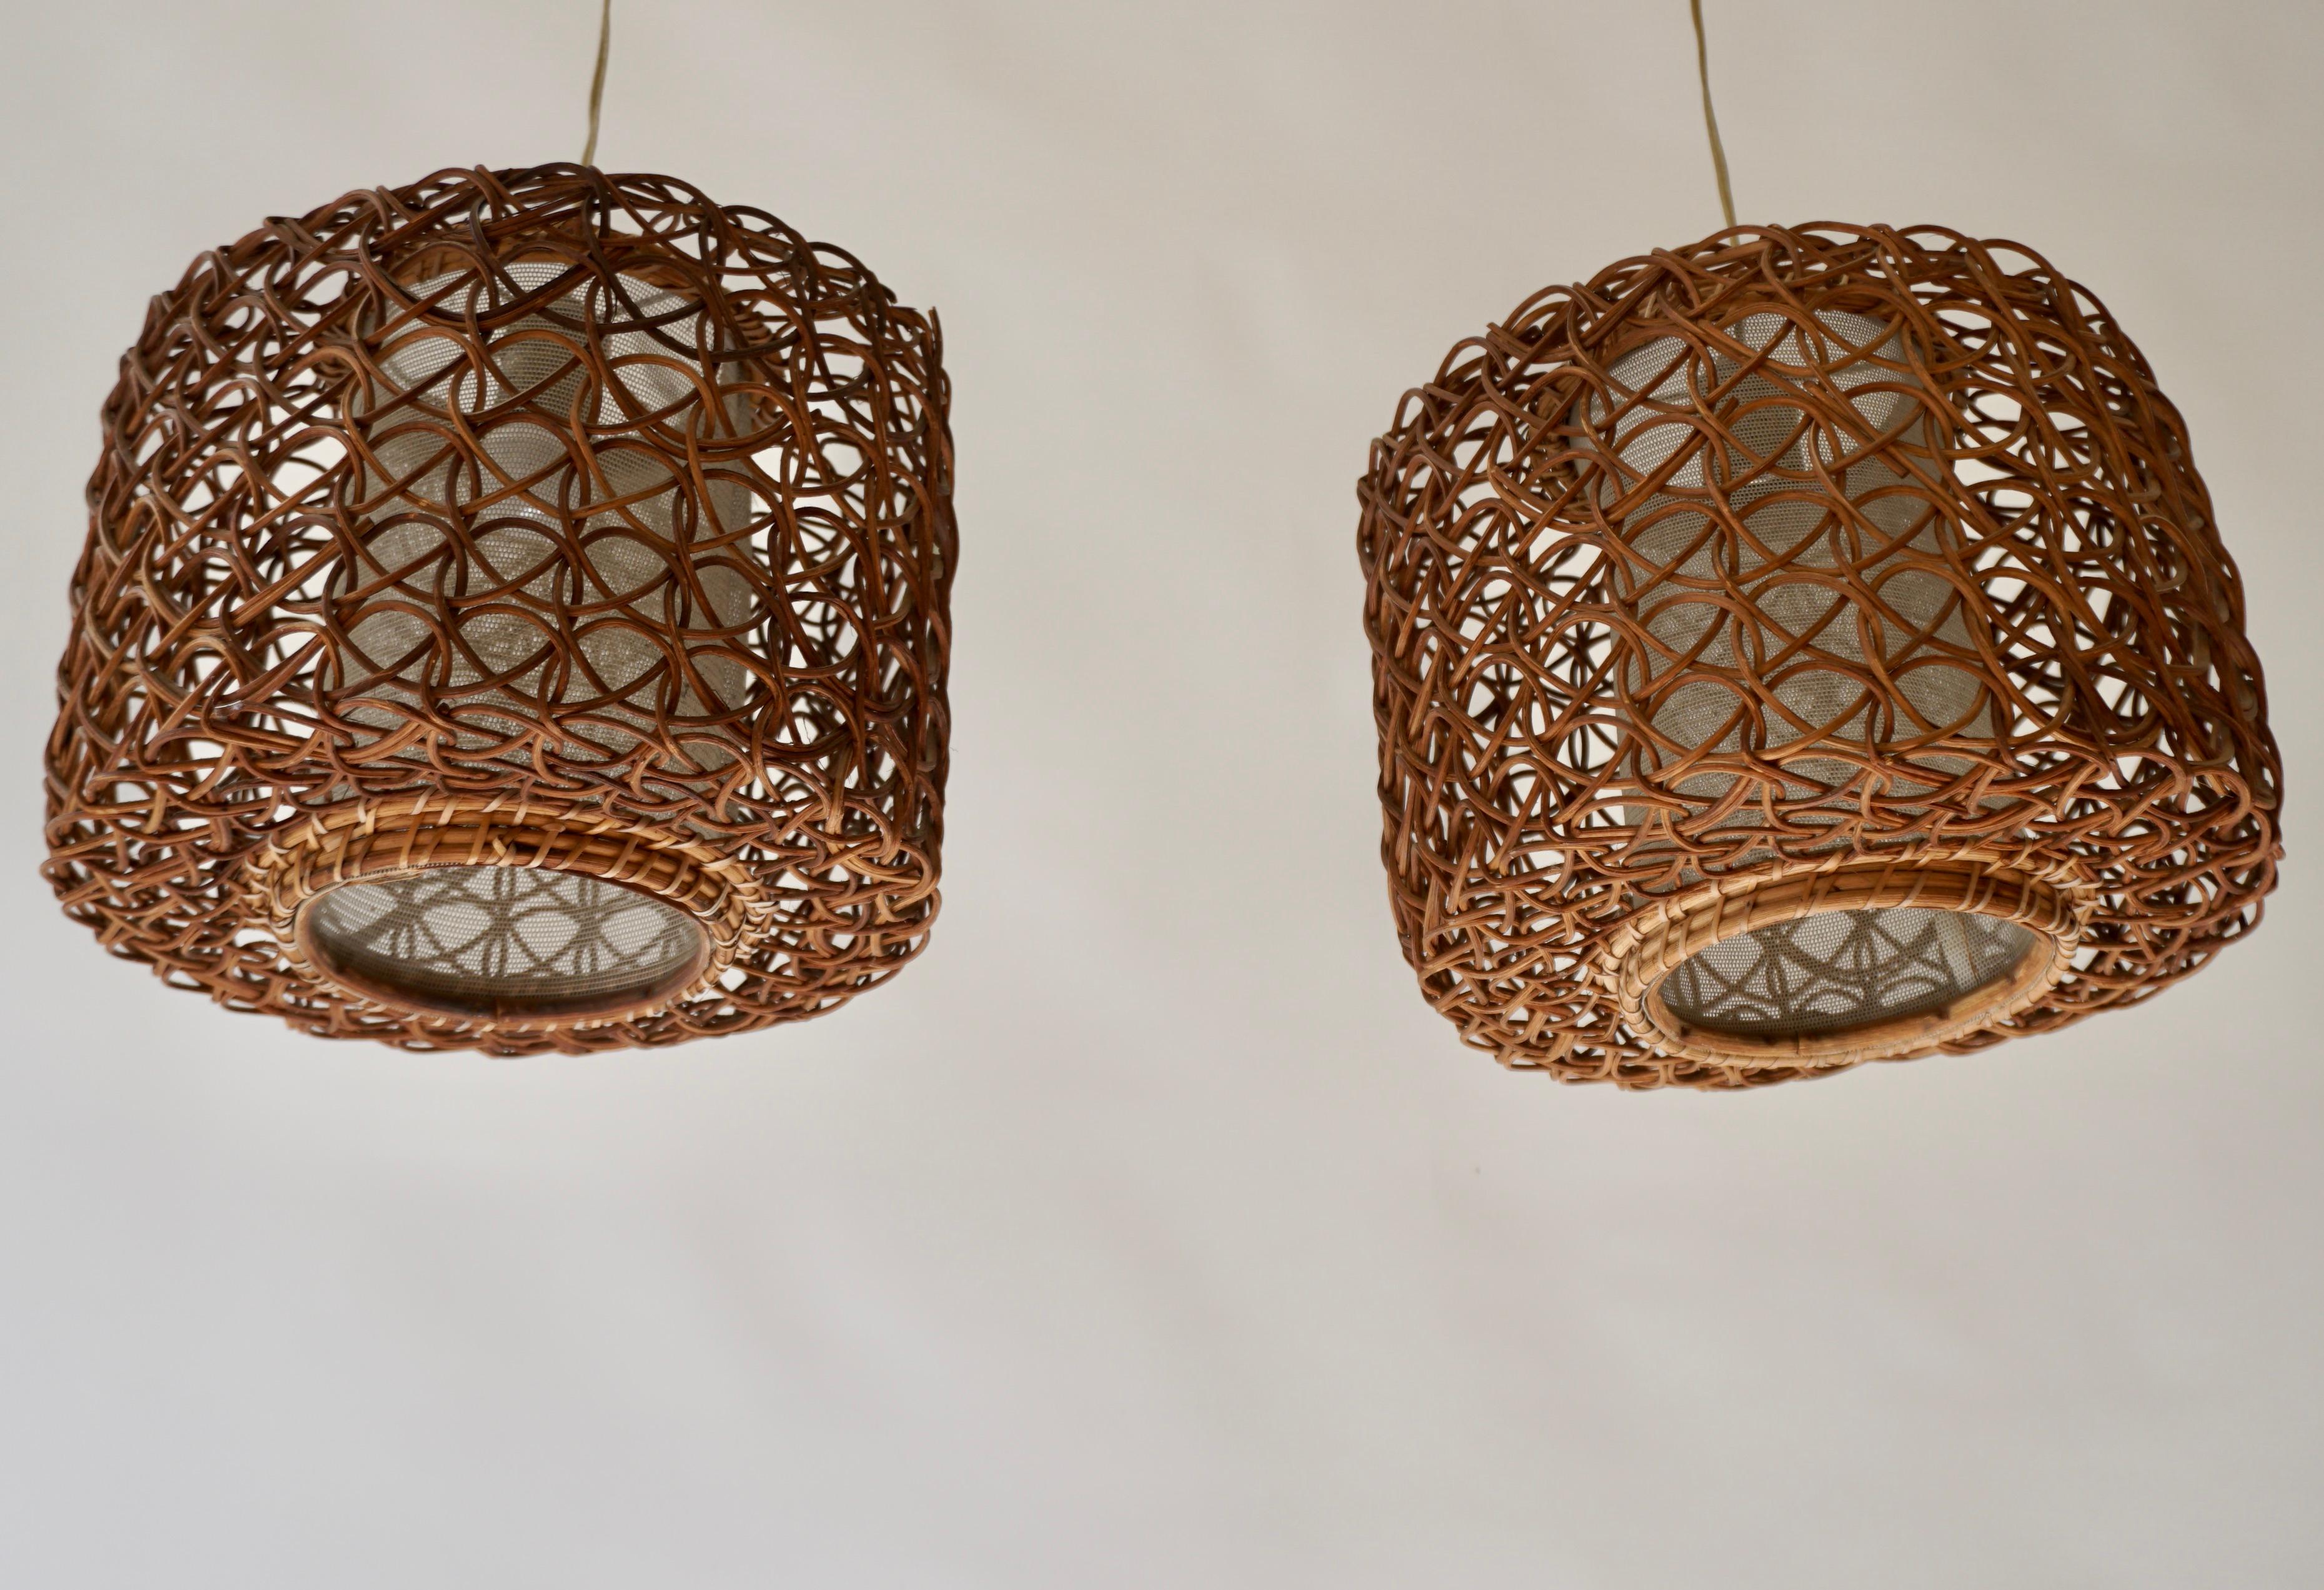 Trois lampes suspendues en rotin français avec un abat-jour intérieur avec une sorte de texture de lin. L'abat-jour intérieur est entouré d'une enveloppe ronde en rotin séparée.

Diamètre 11,4